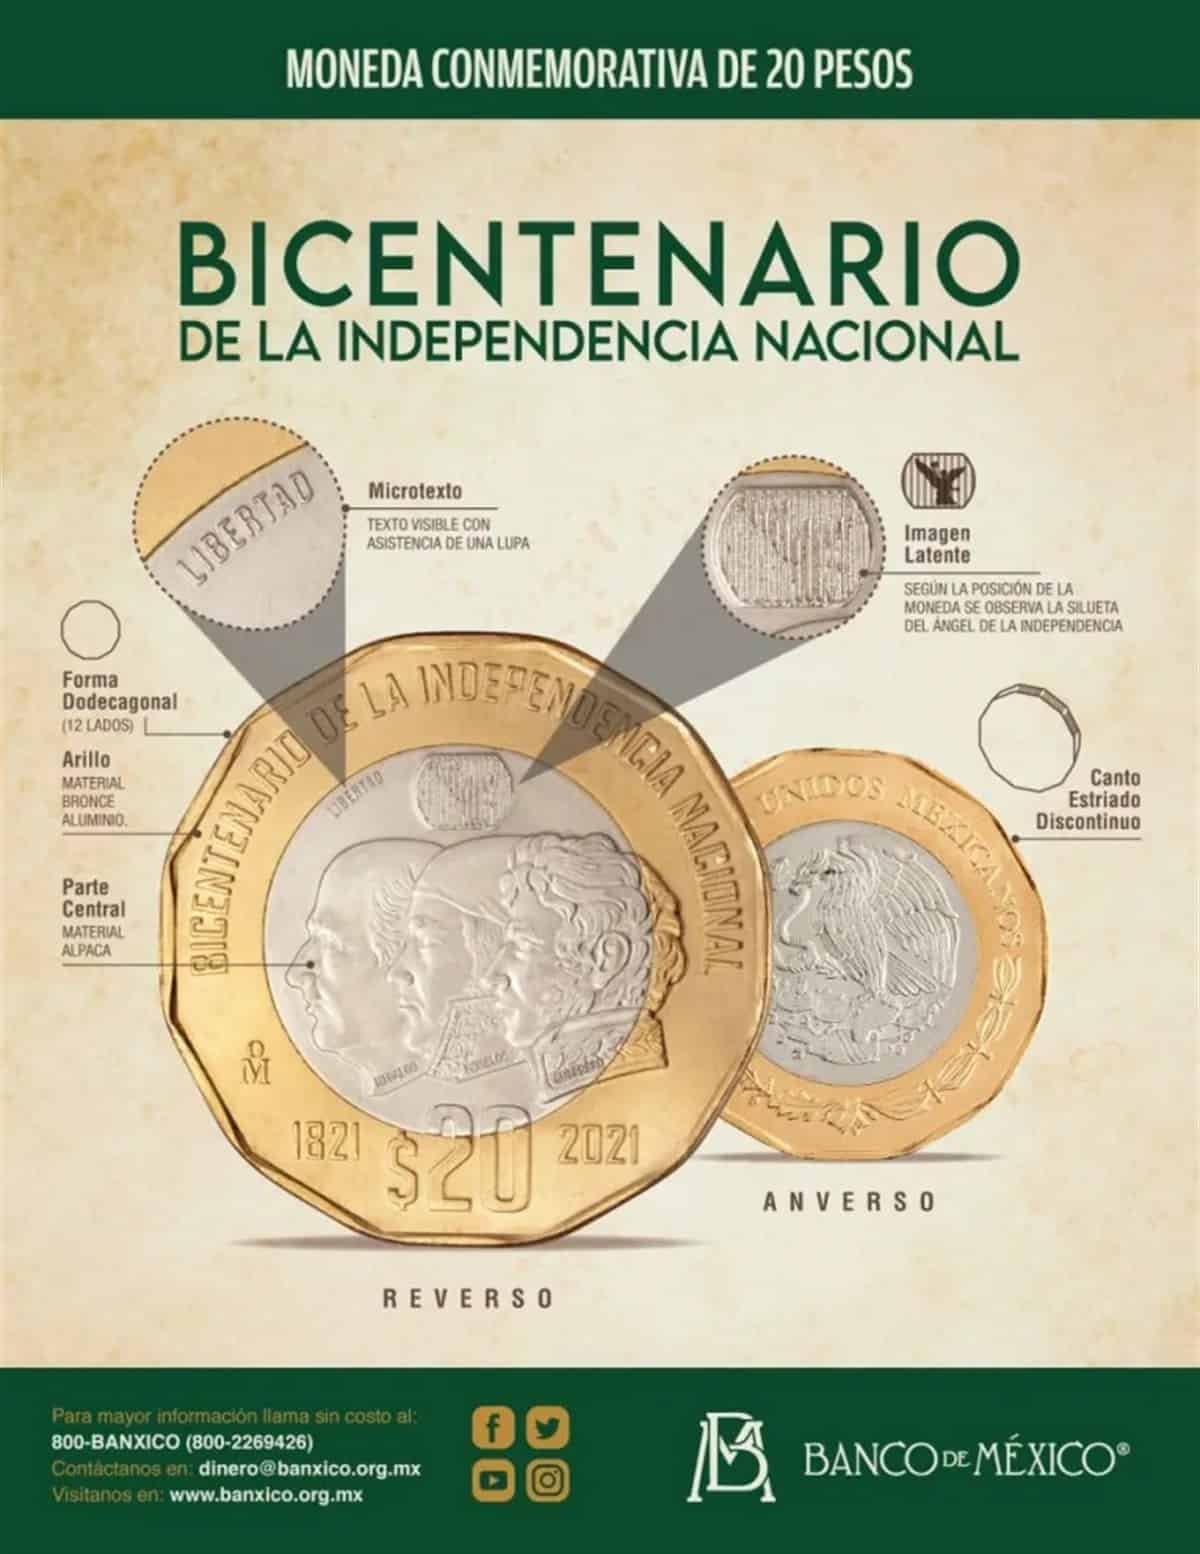 Moneda conmemorativa de la Independencia se vende en $2 millones de pesos 